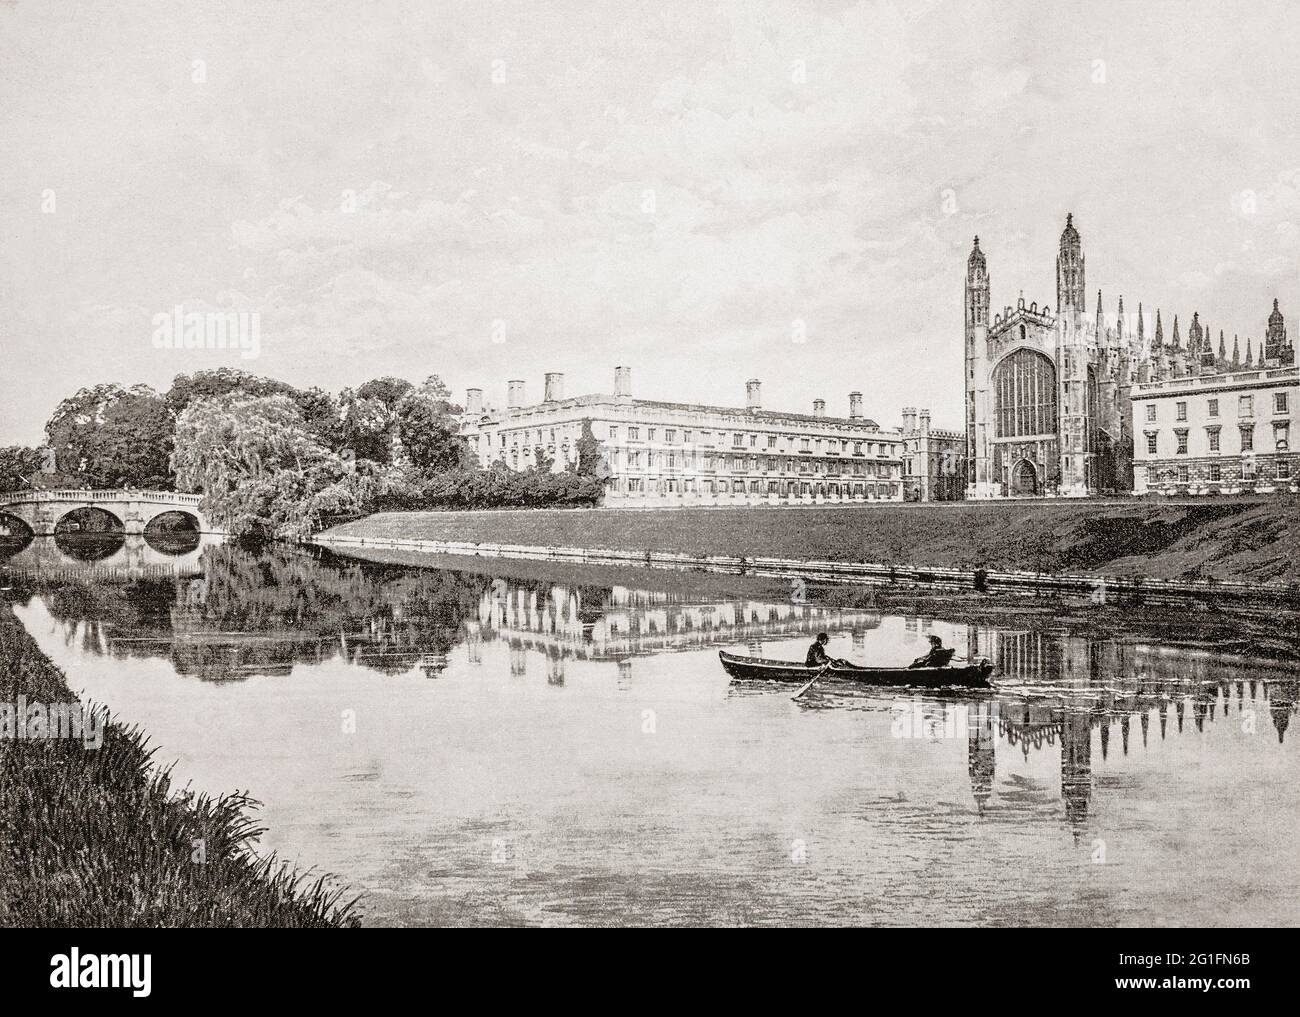 Vue de la fin du XIXe siècle d'un bateau à rames sur la rivière Cam, qui passe devant King's College et Chapel, un collège de l'université de Cambridge, en Angleterre. Banque D'Images